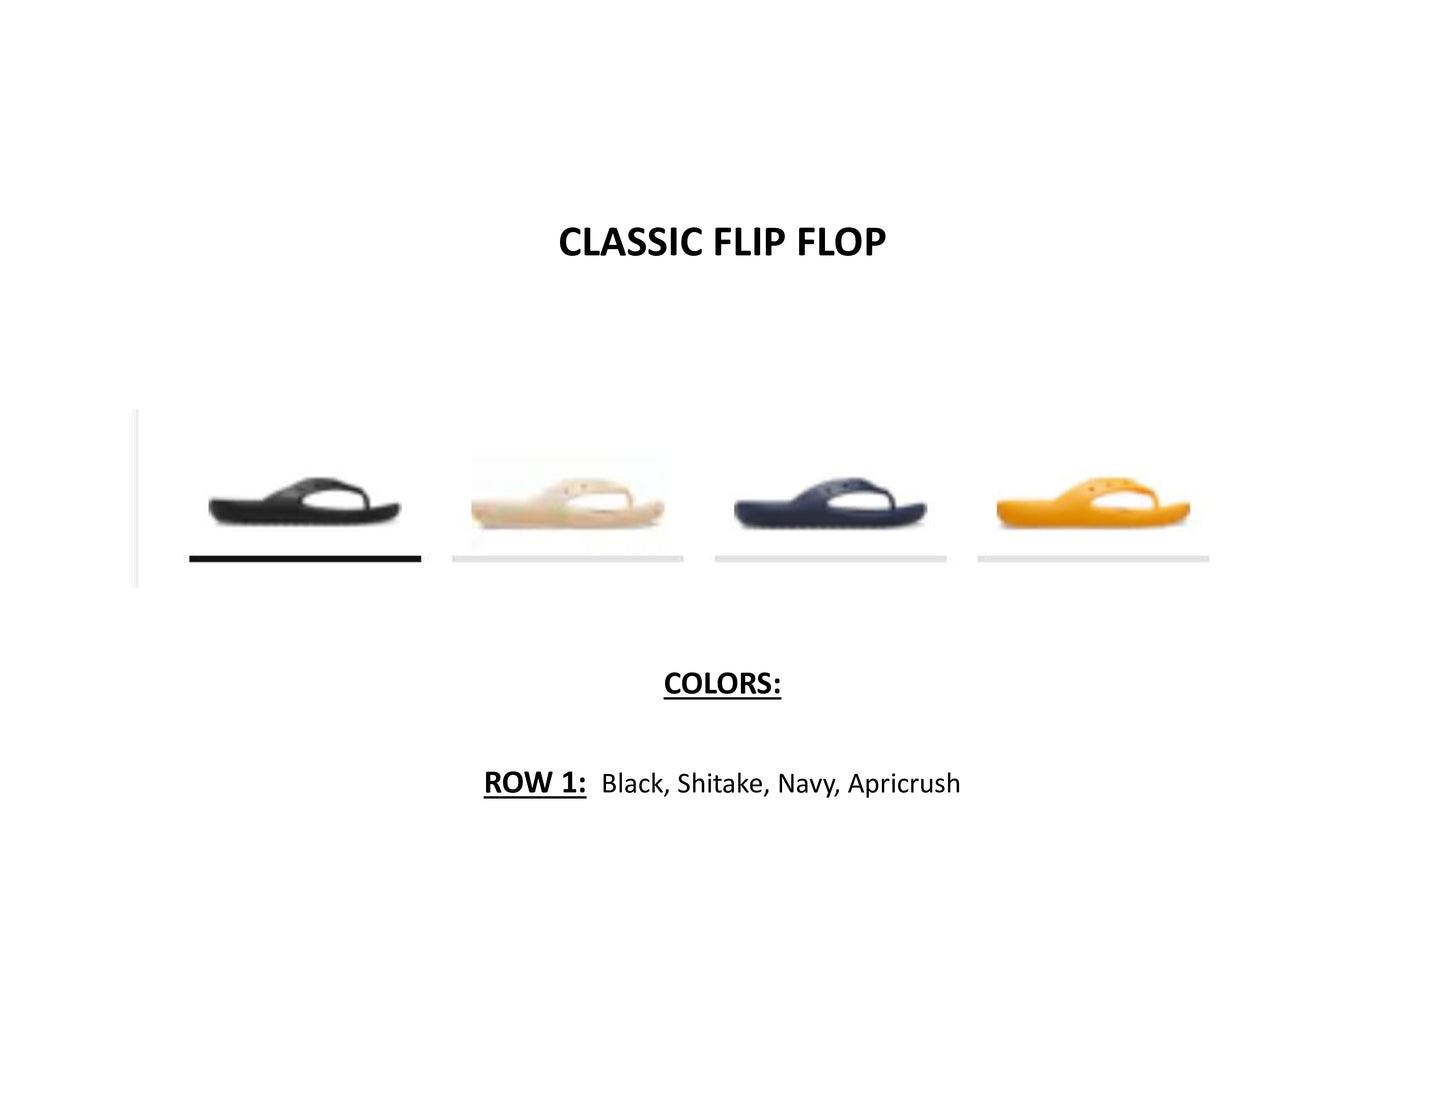 Custom Designed Classic Flip Flop